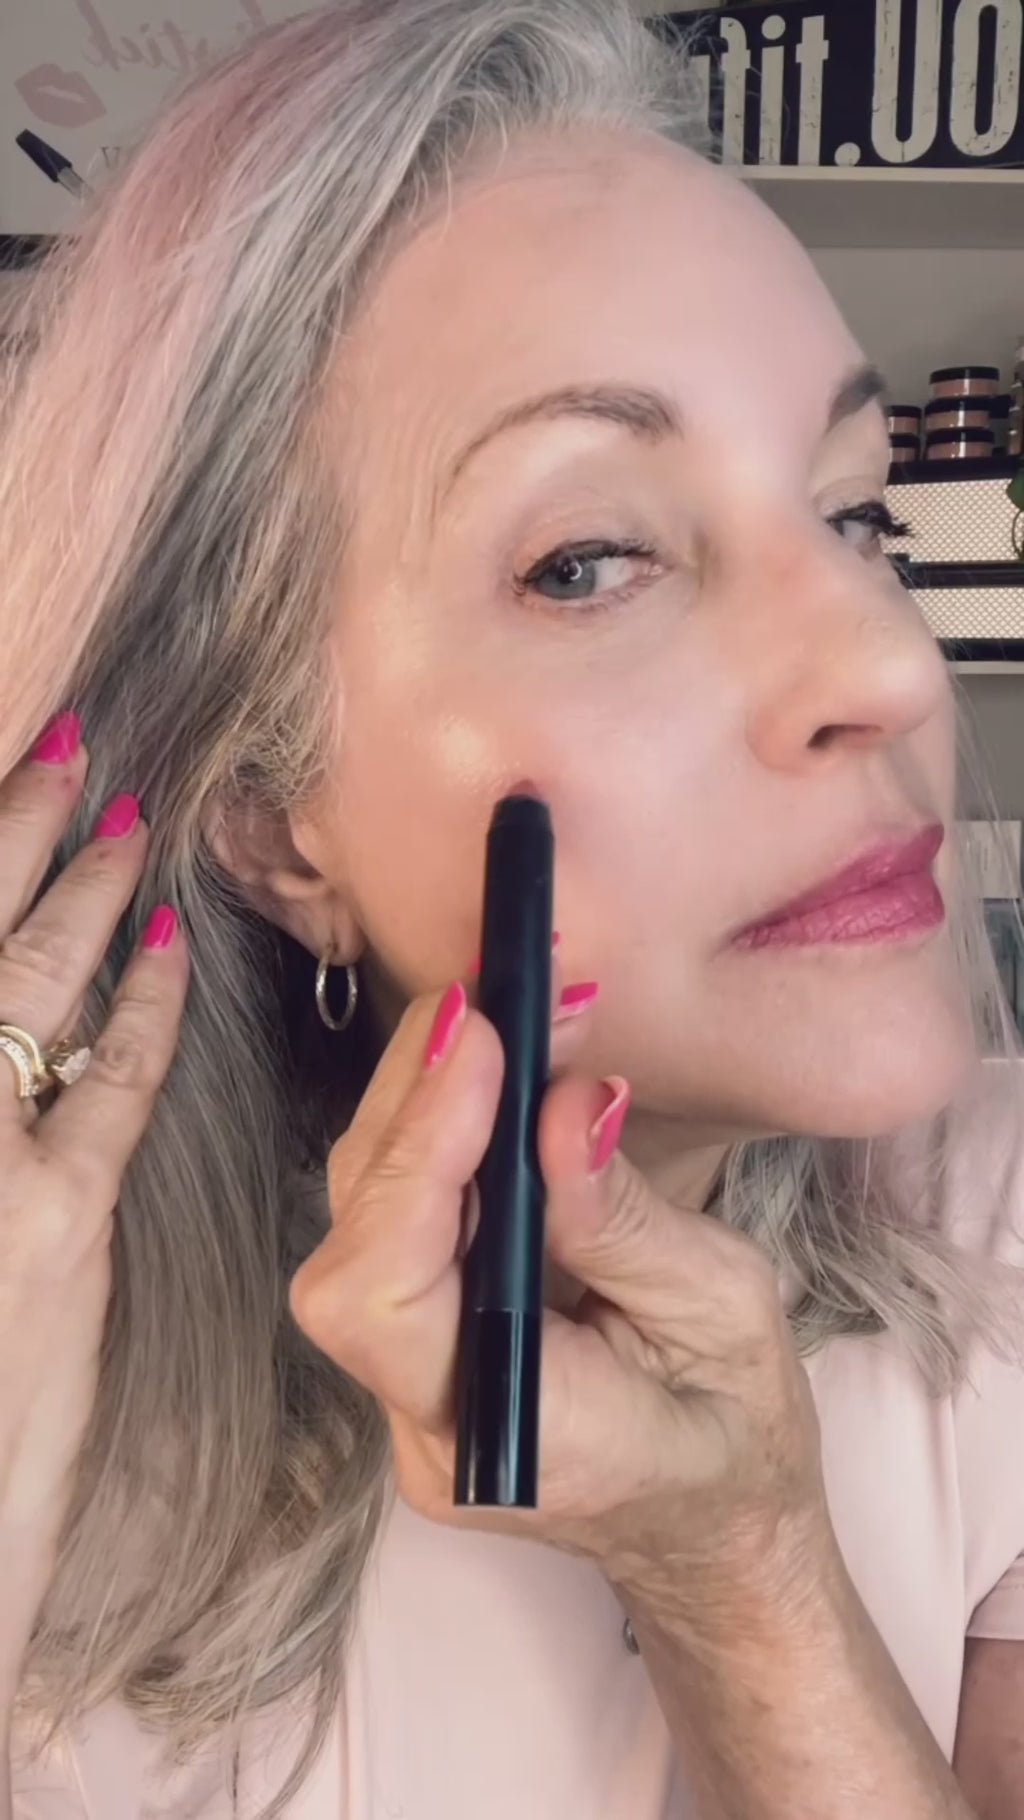 woman applying pink makeup crayon.